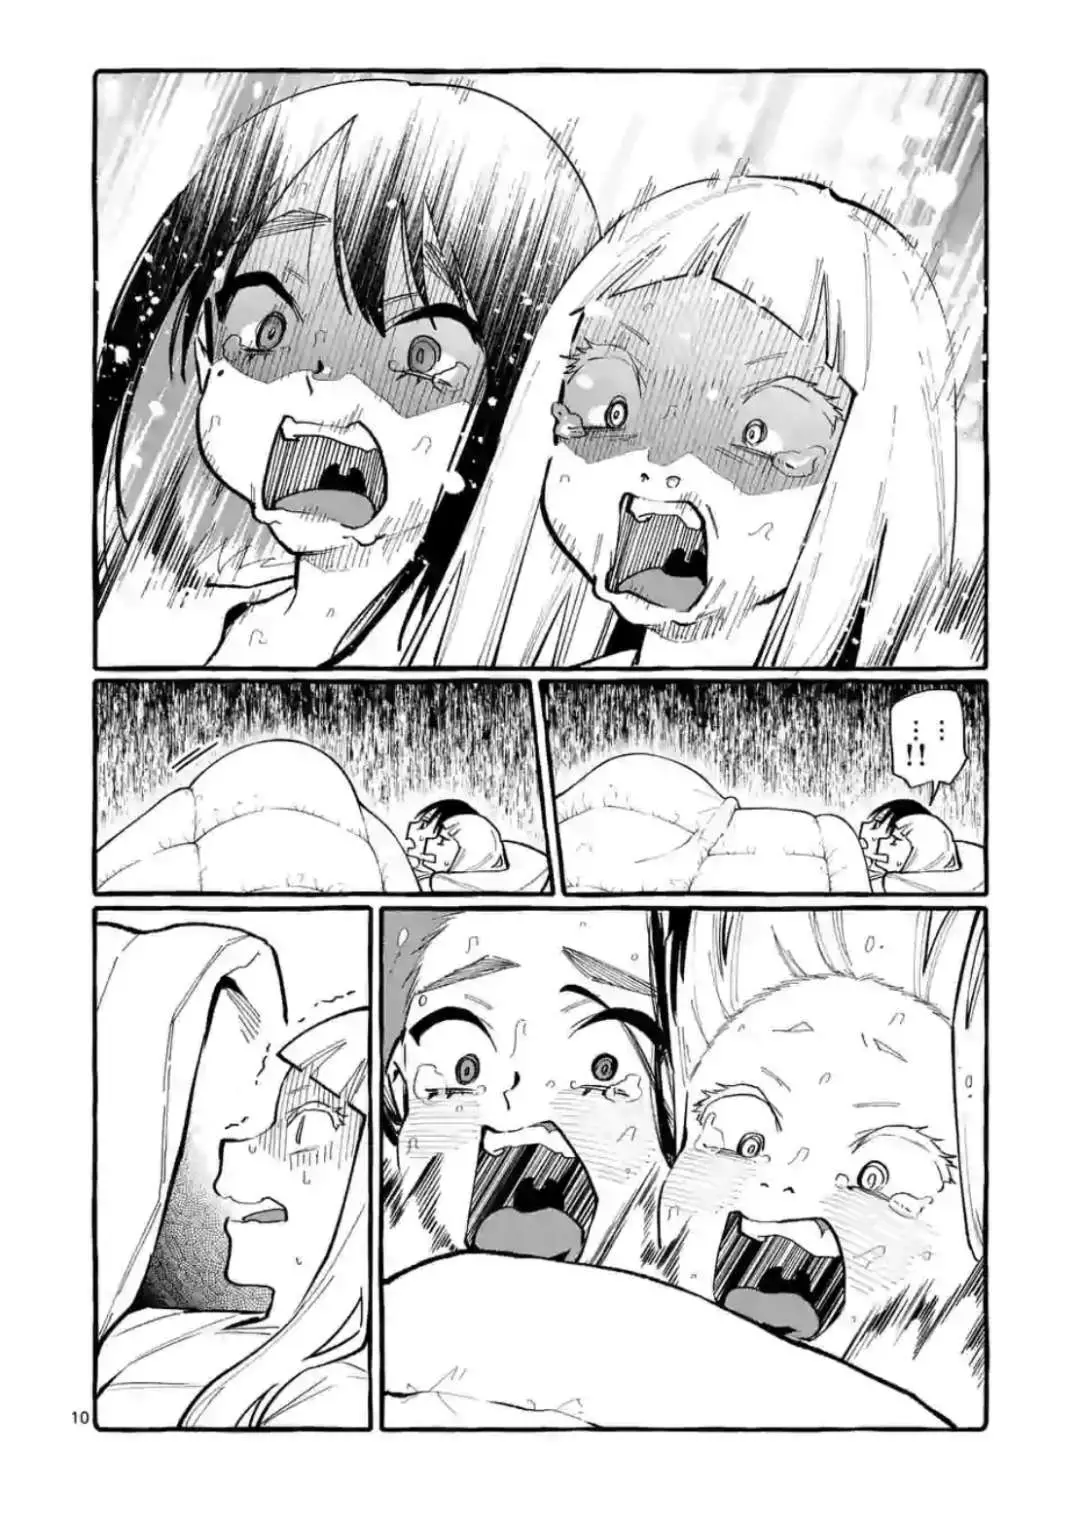 Ushiro No Shoumen Kamui-San - 20 page 10-7c3d5c4f